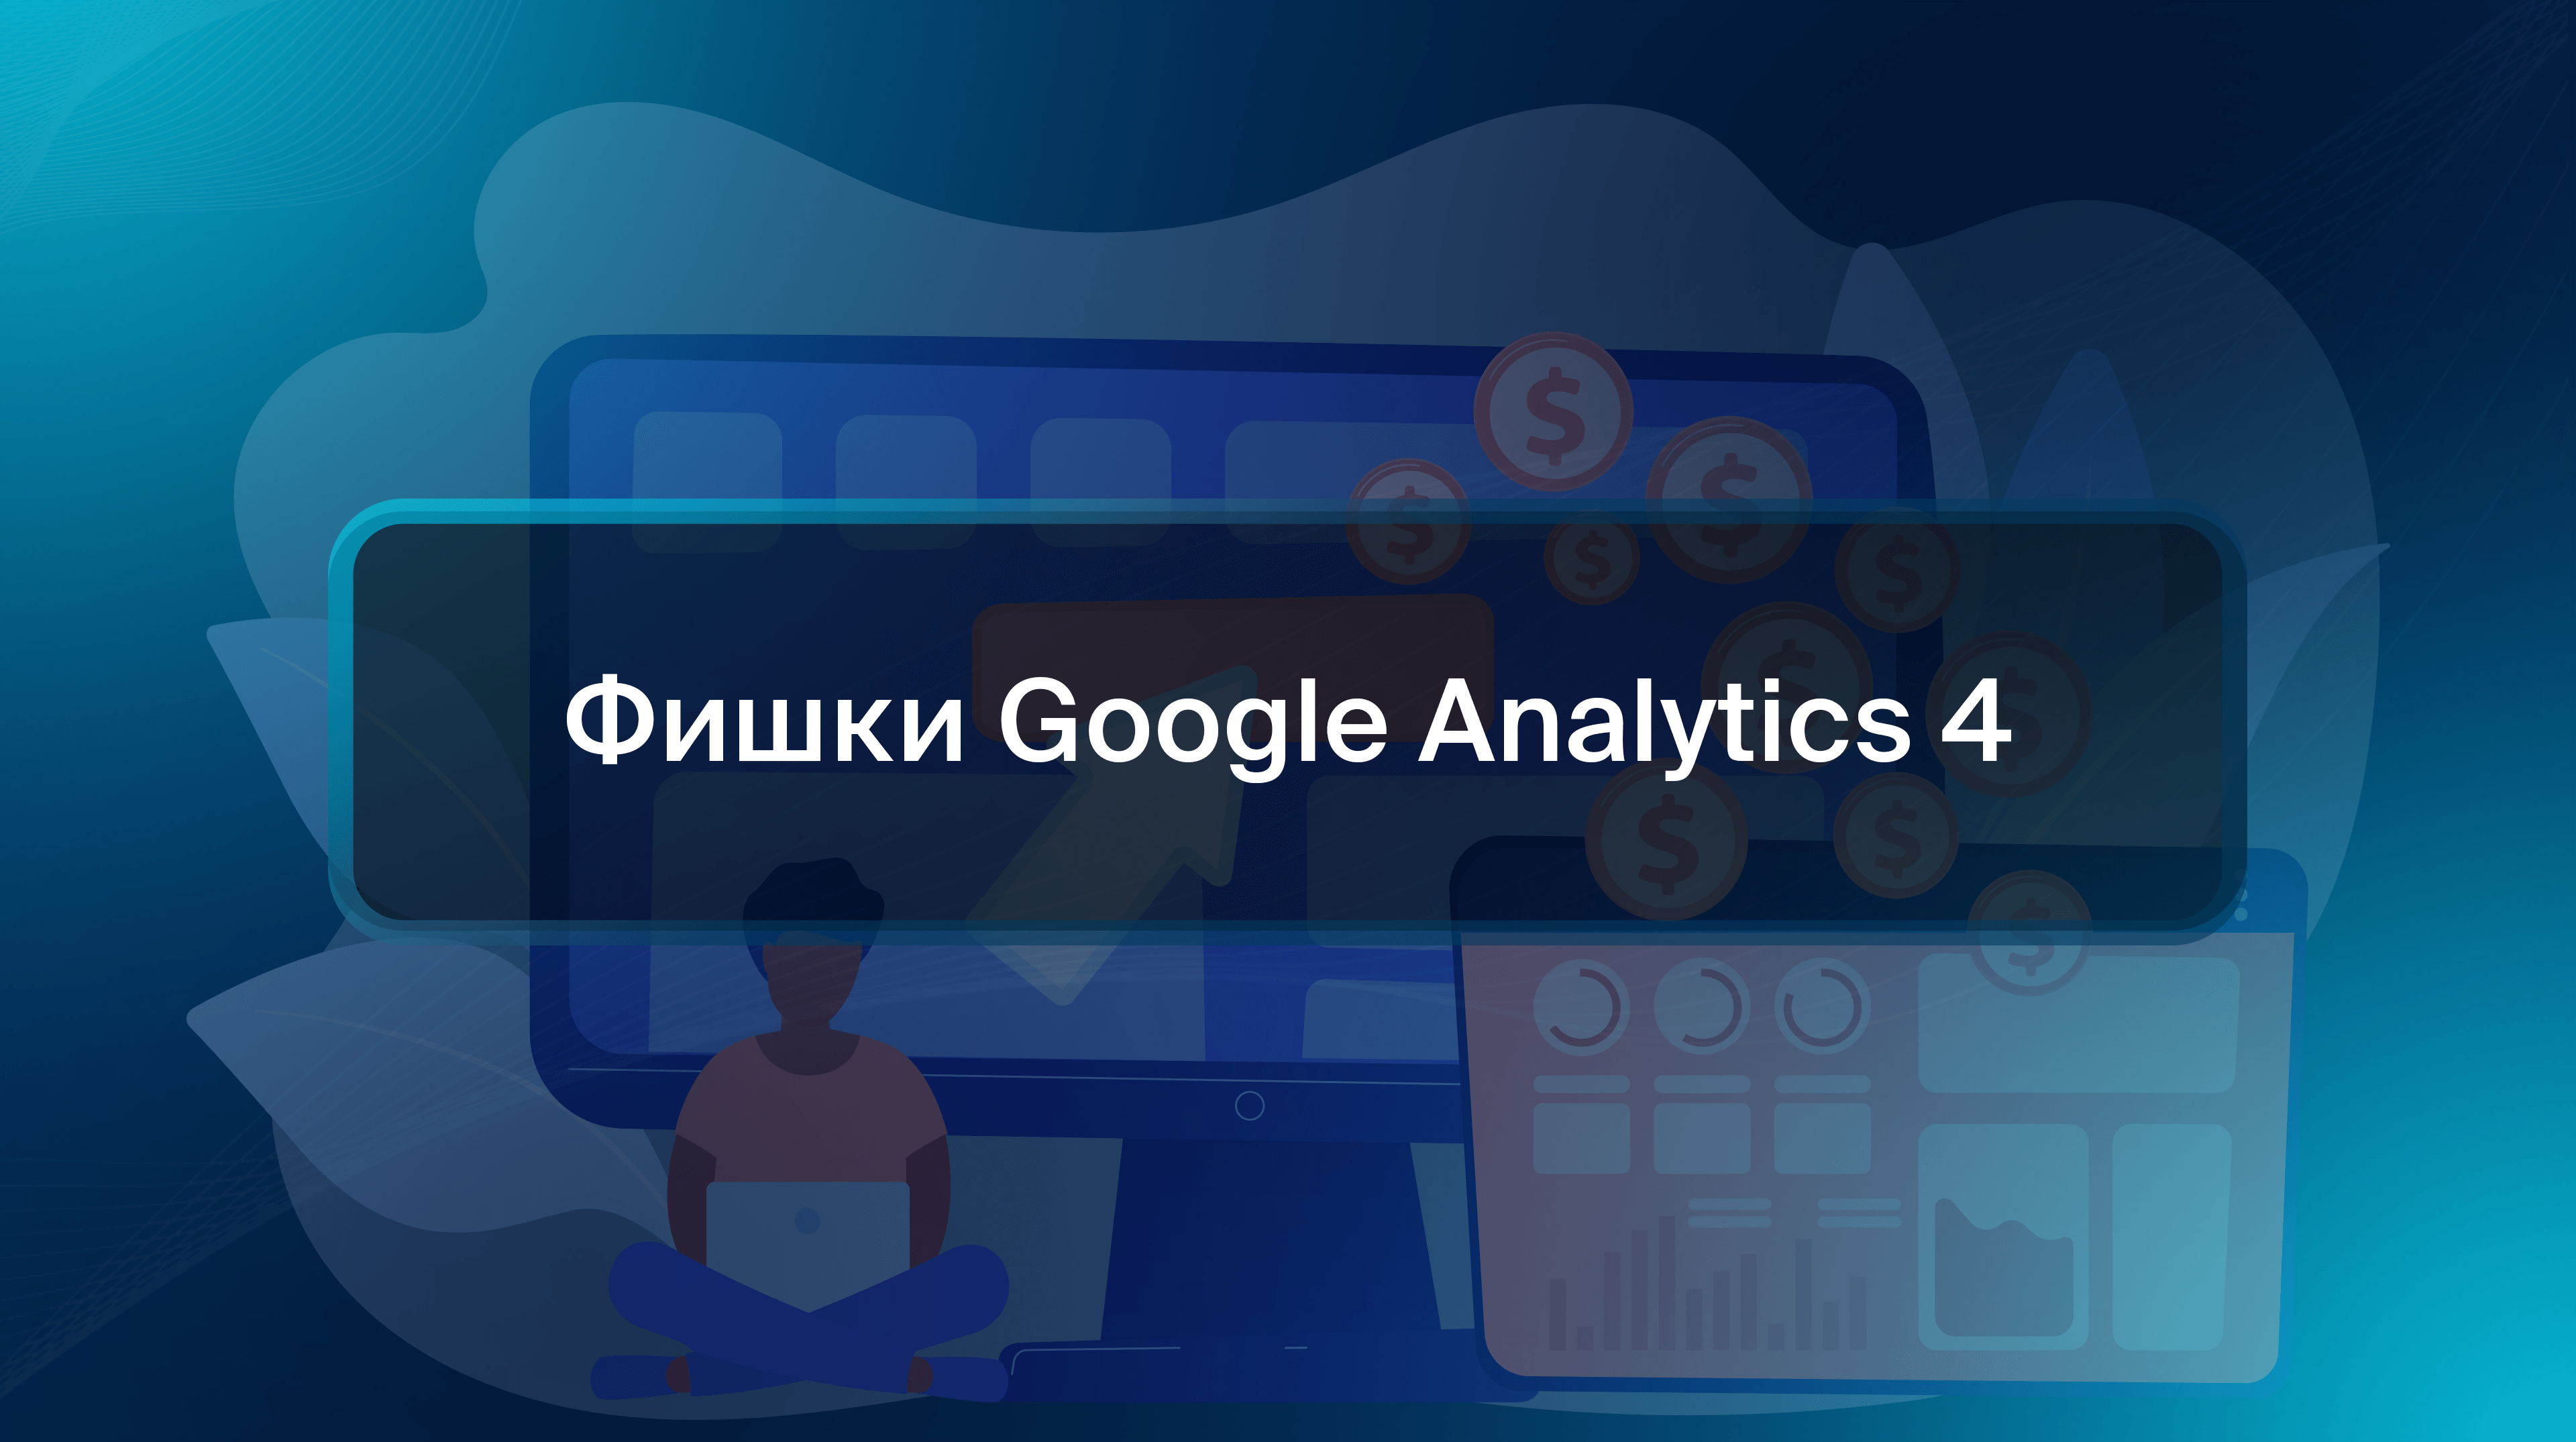 Фишки Google Analytics 4